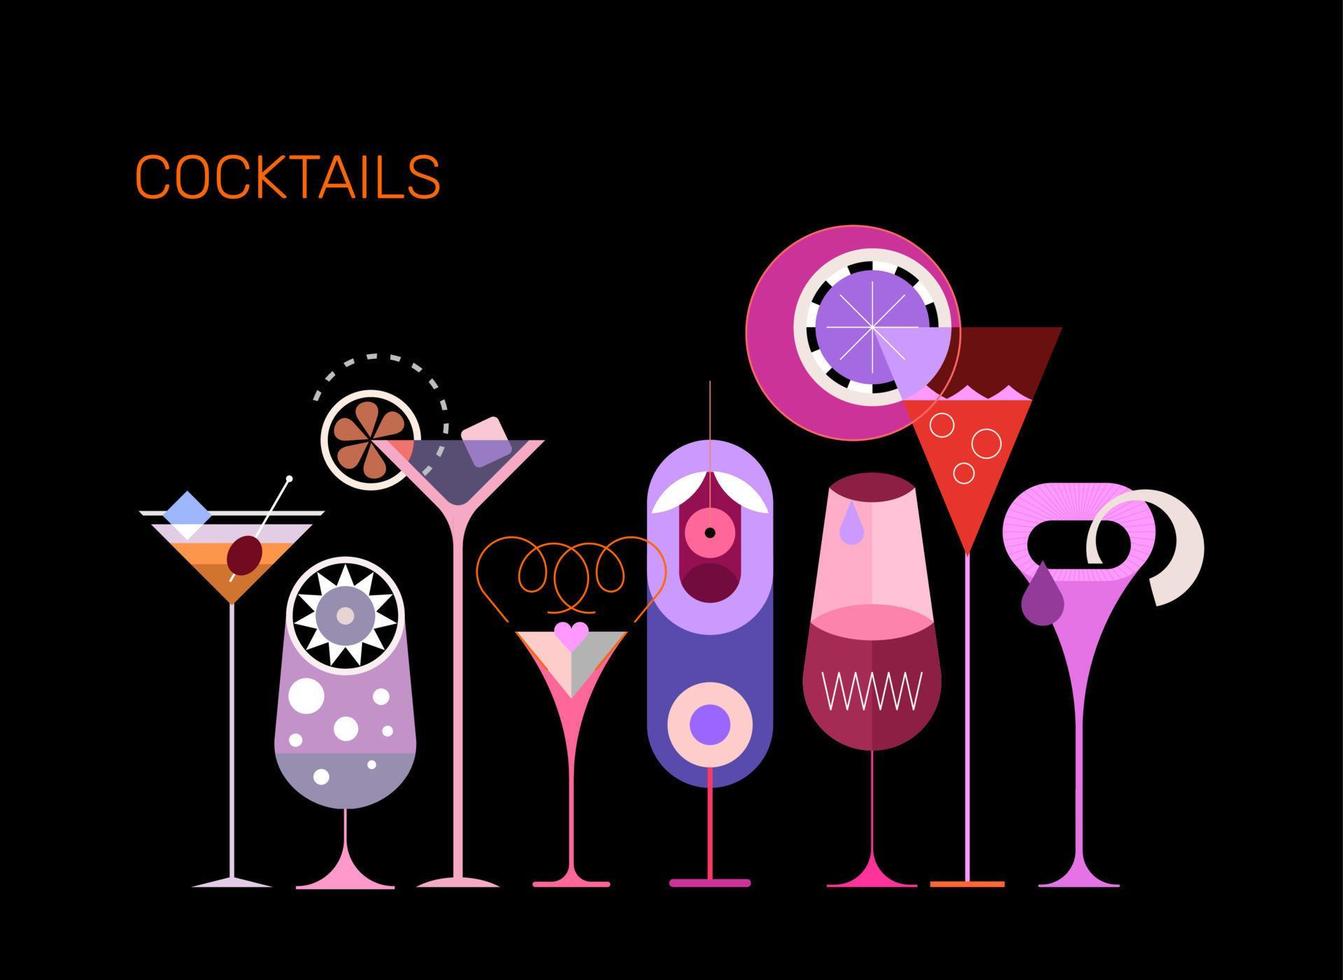 Cocktails vector illustration